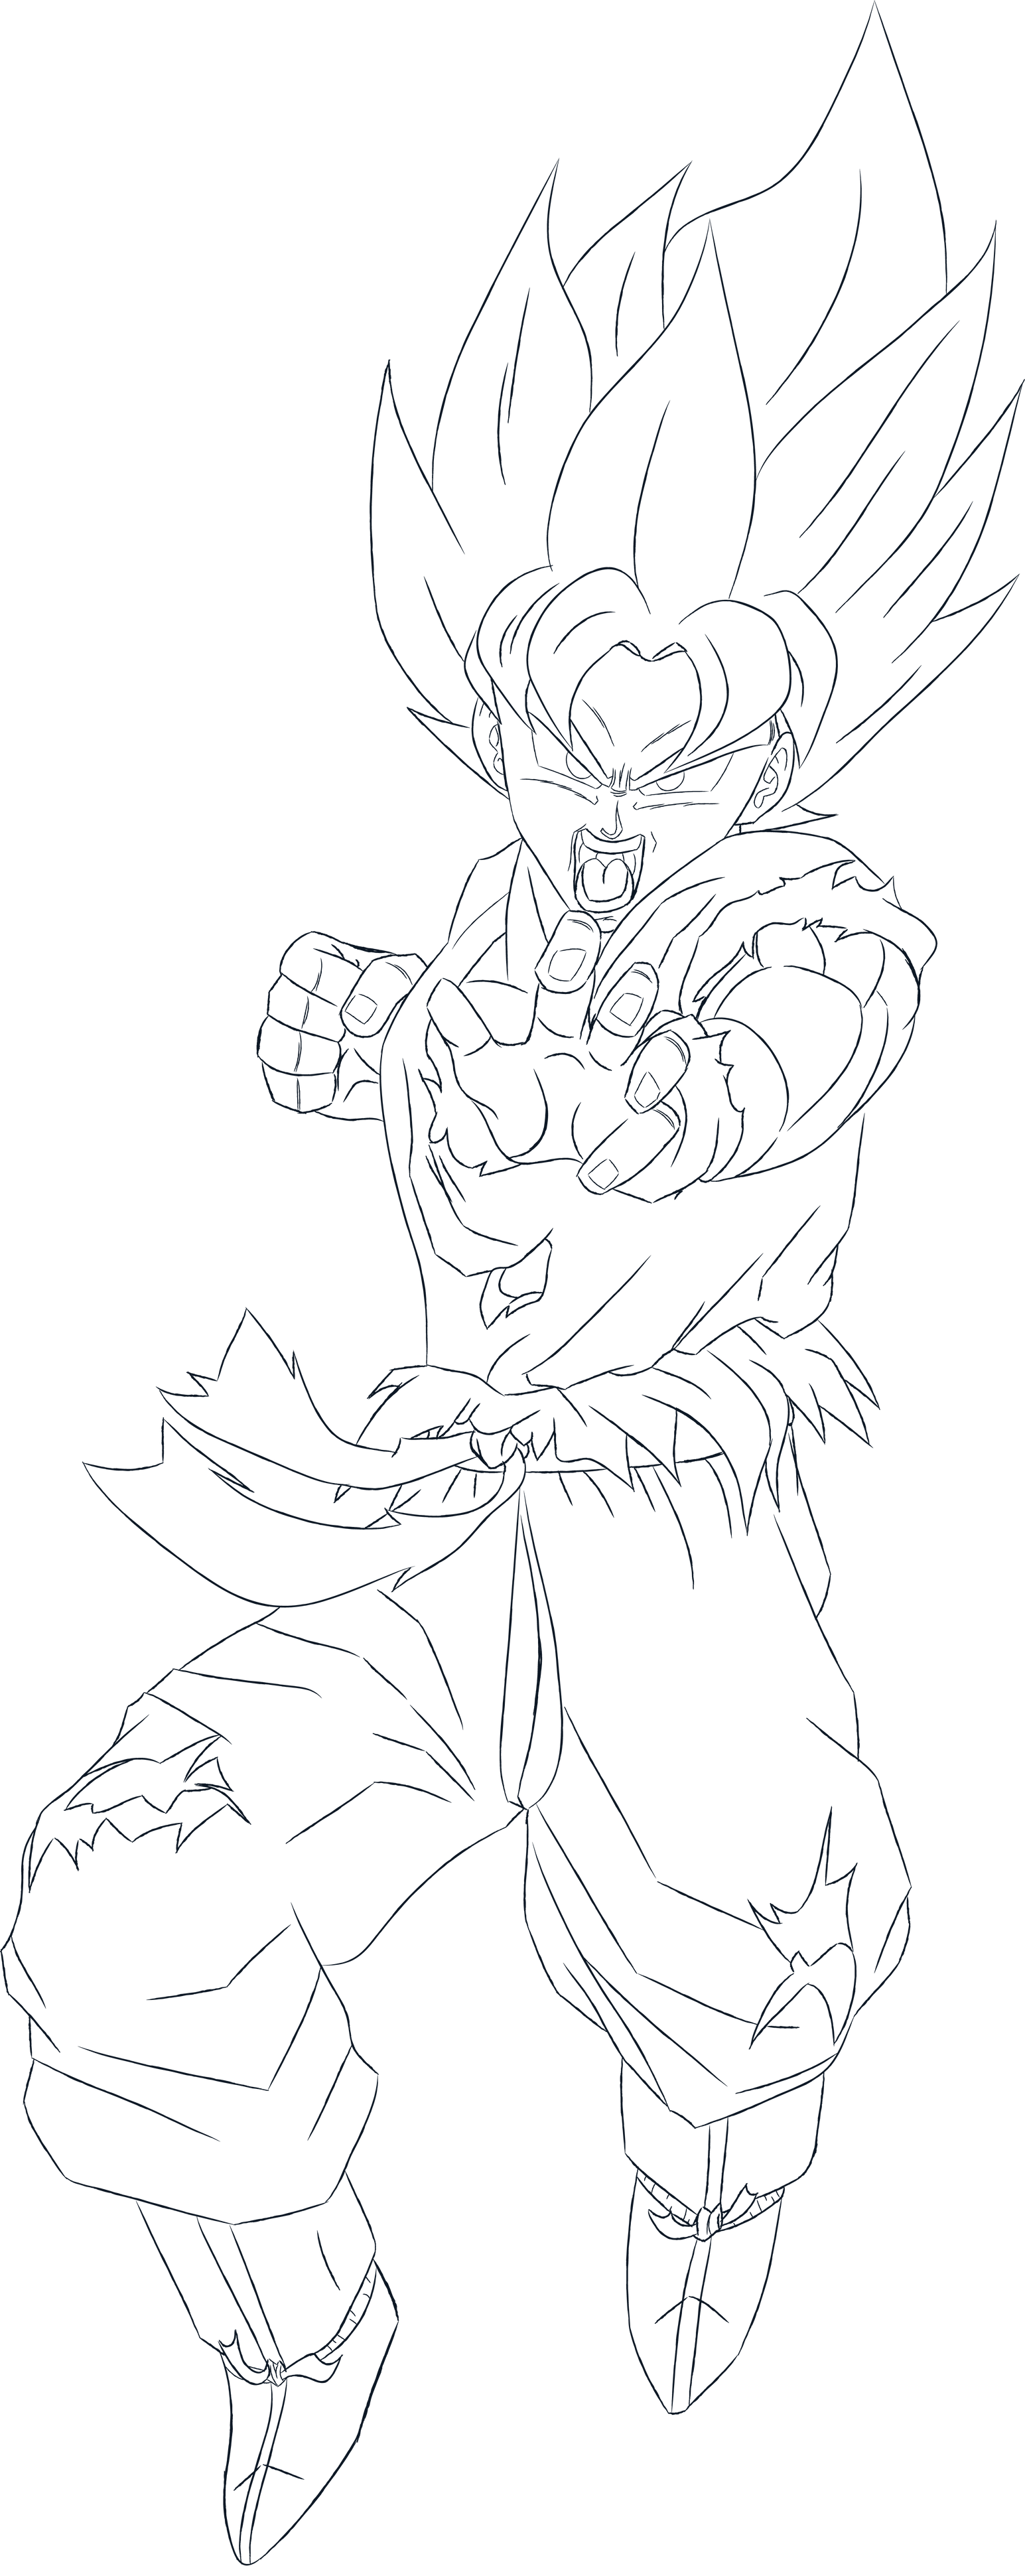 Goku Super Saiyan Blue Lineart by ChronoFz on DeviantArt  Goku super  saiyan blue, Goku super saiyan, Goku drawing